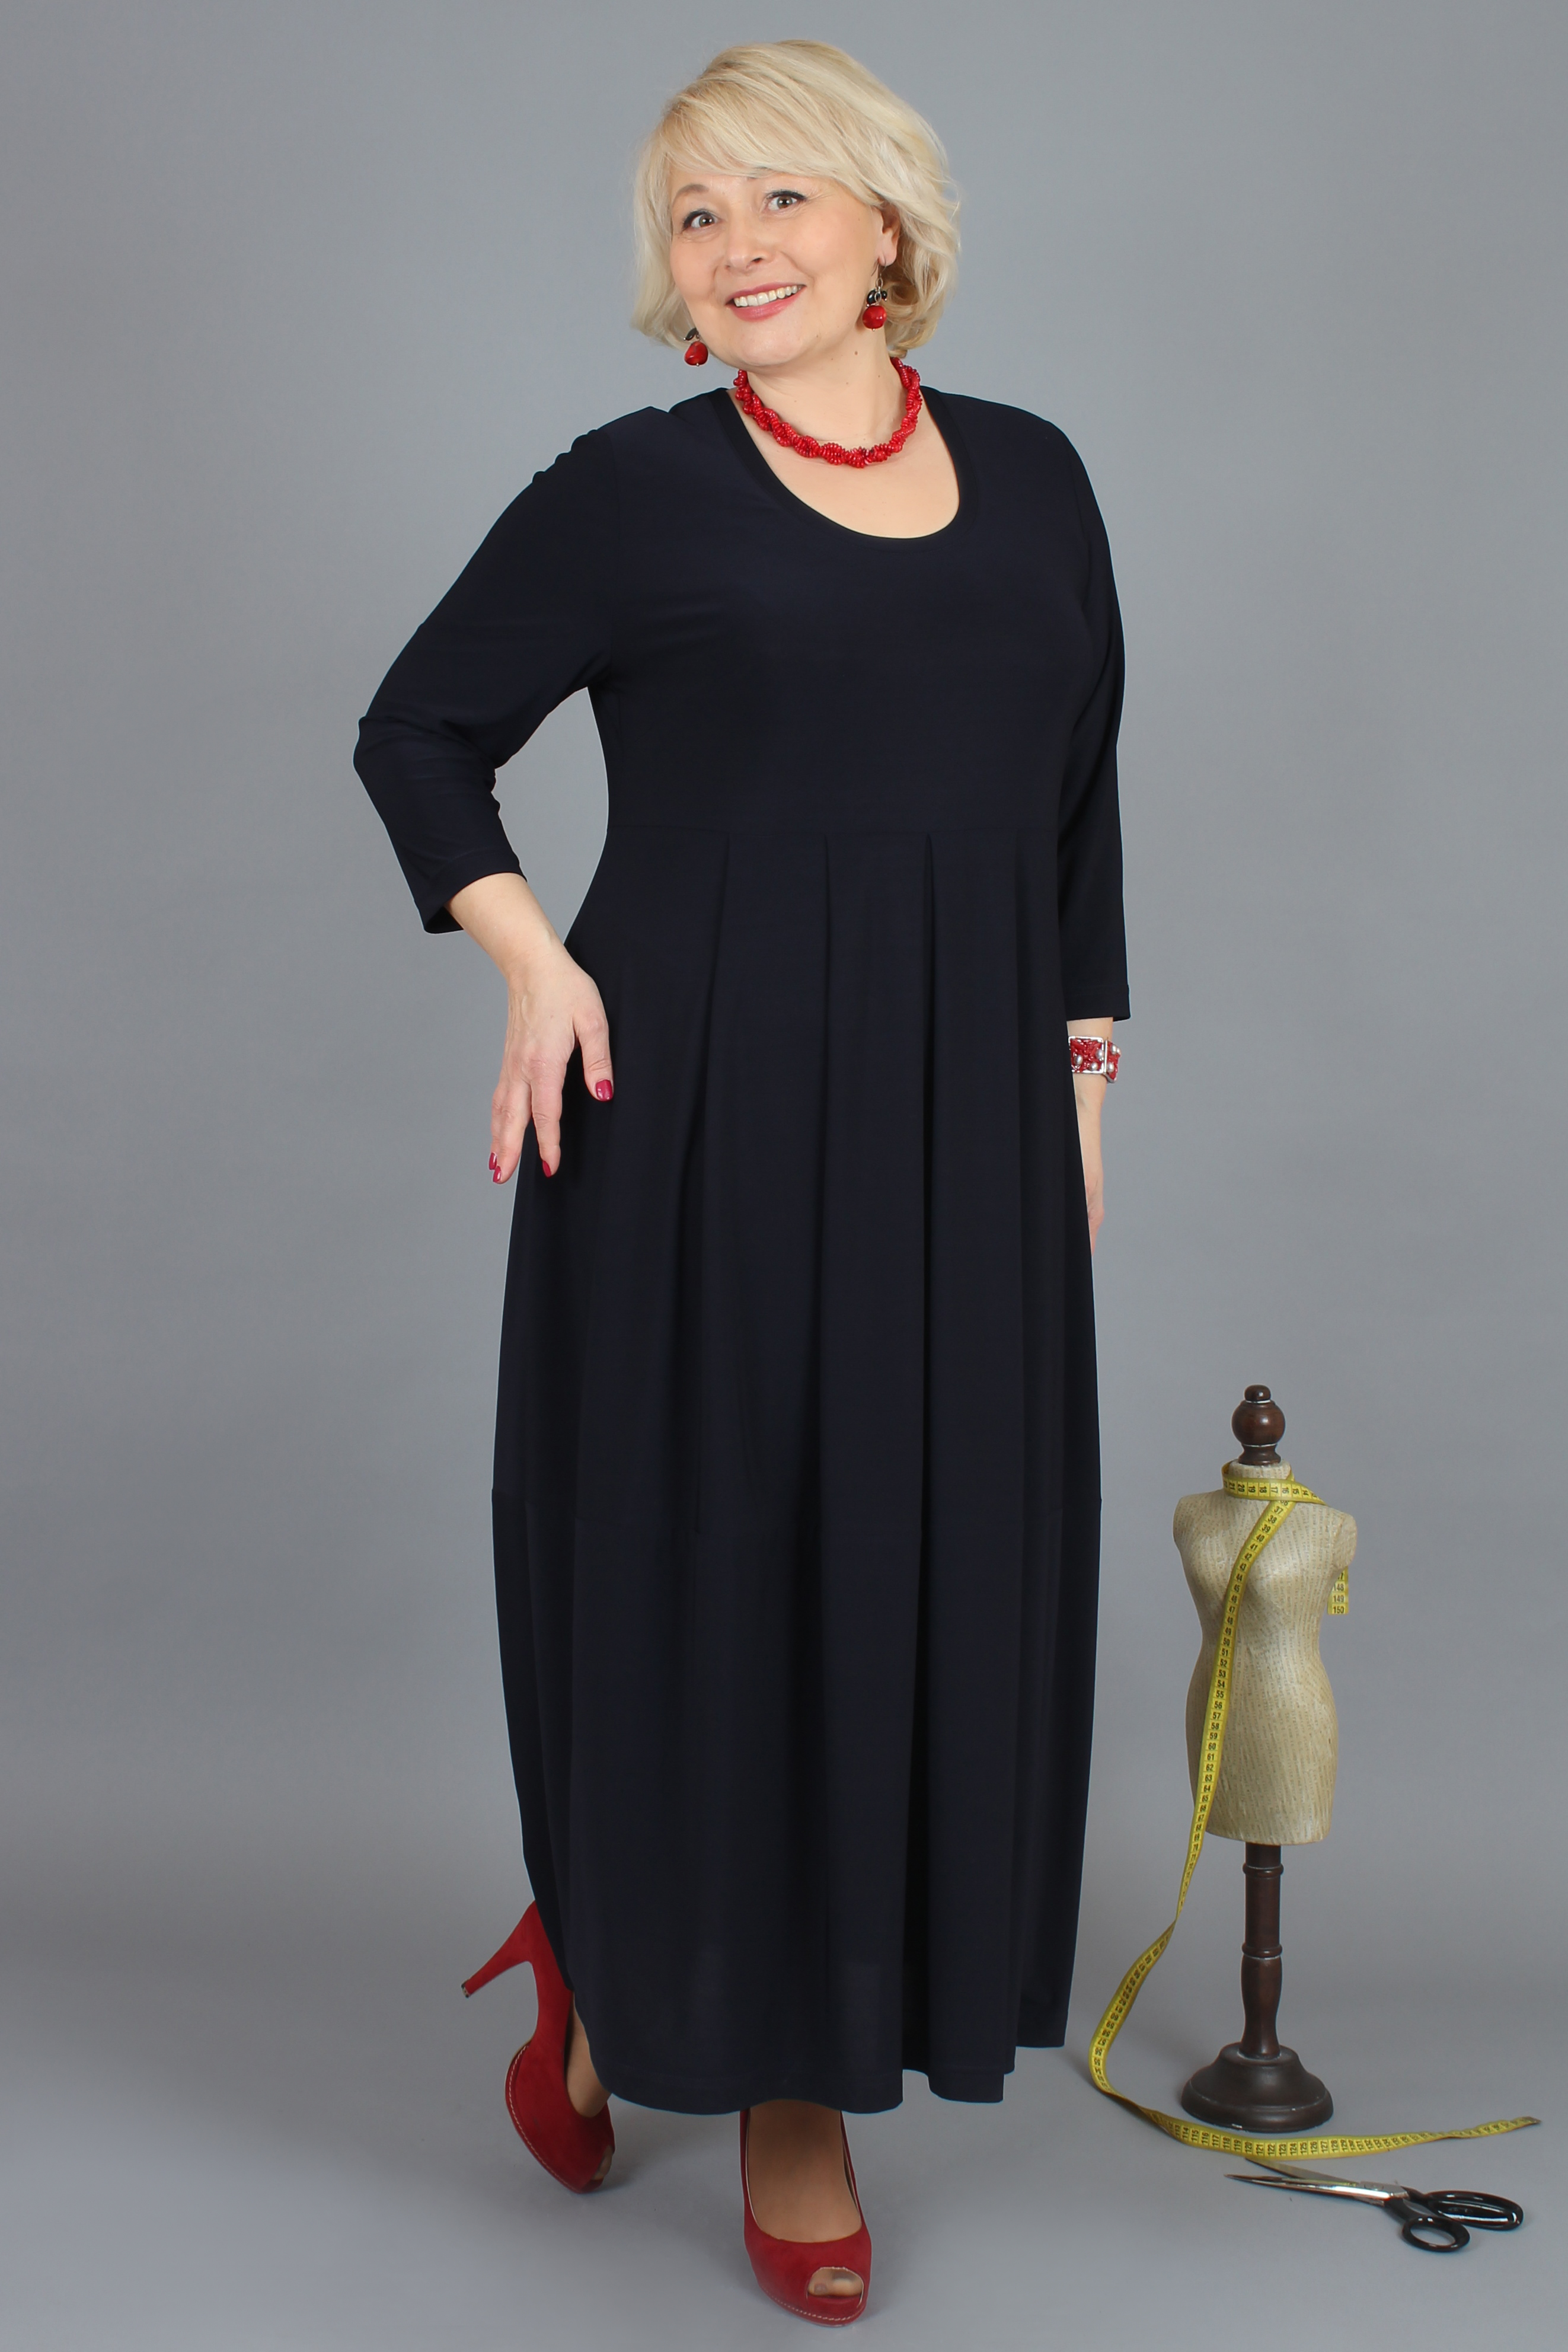 Женское платье NadiN 1328/2 52 размер Чёрное